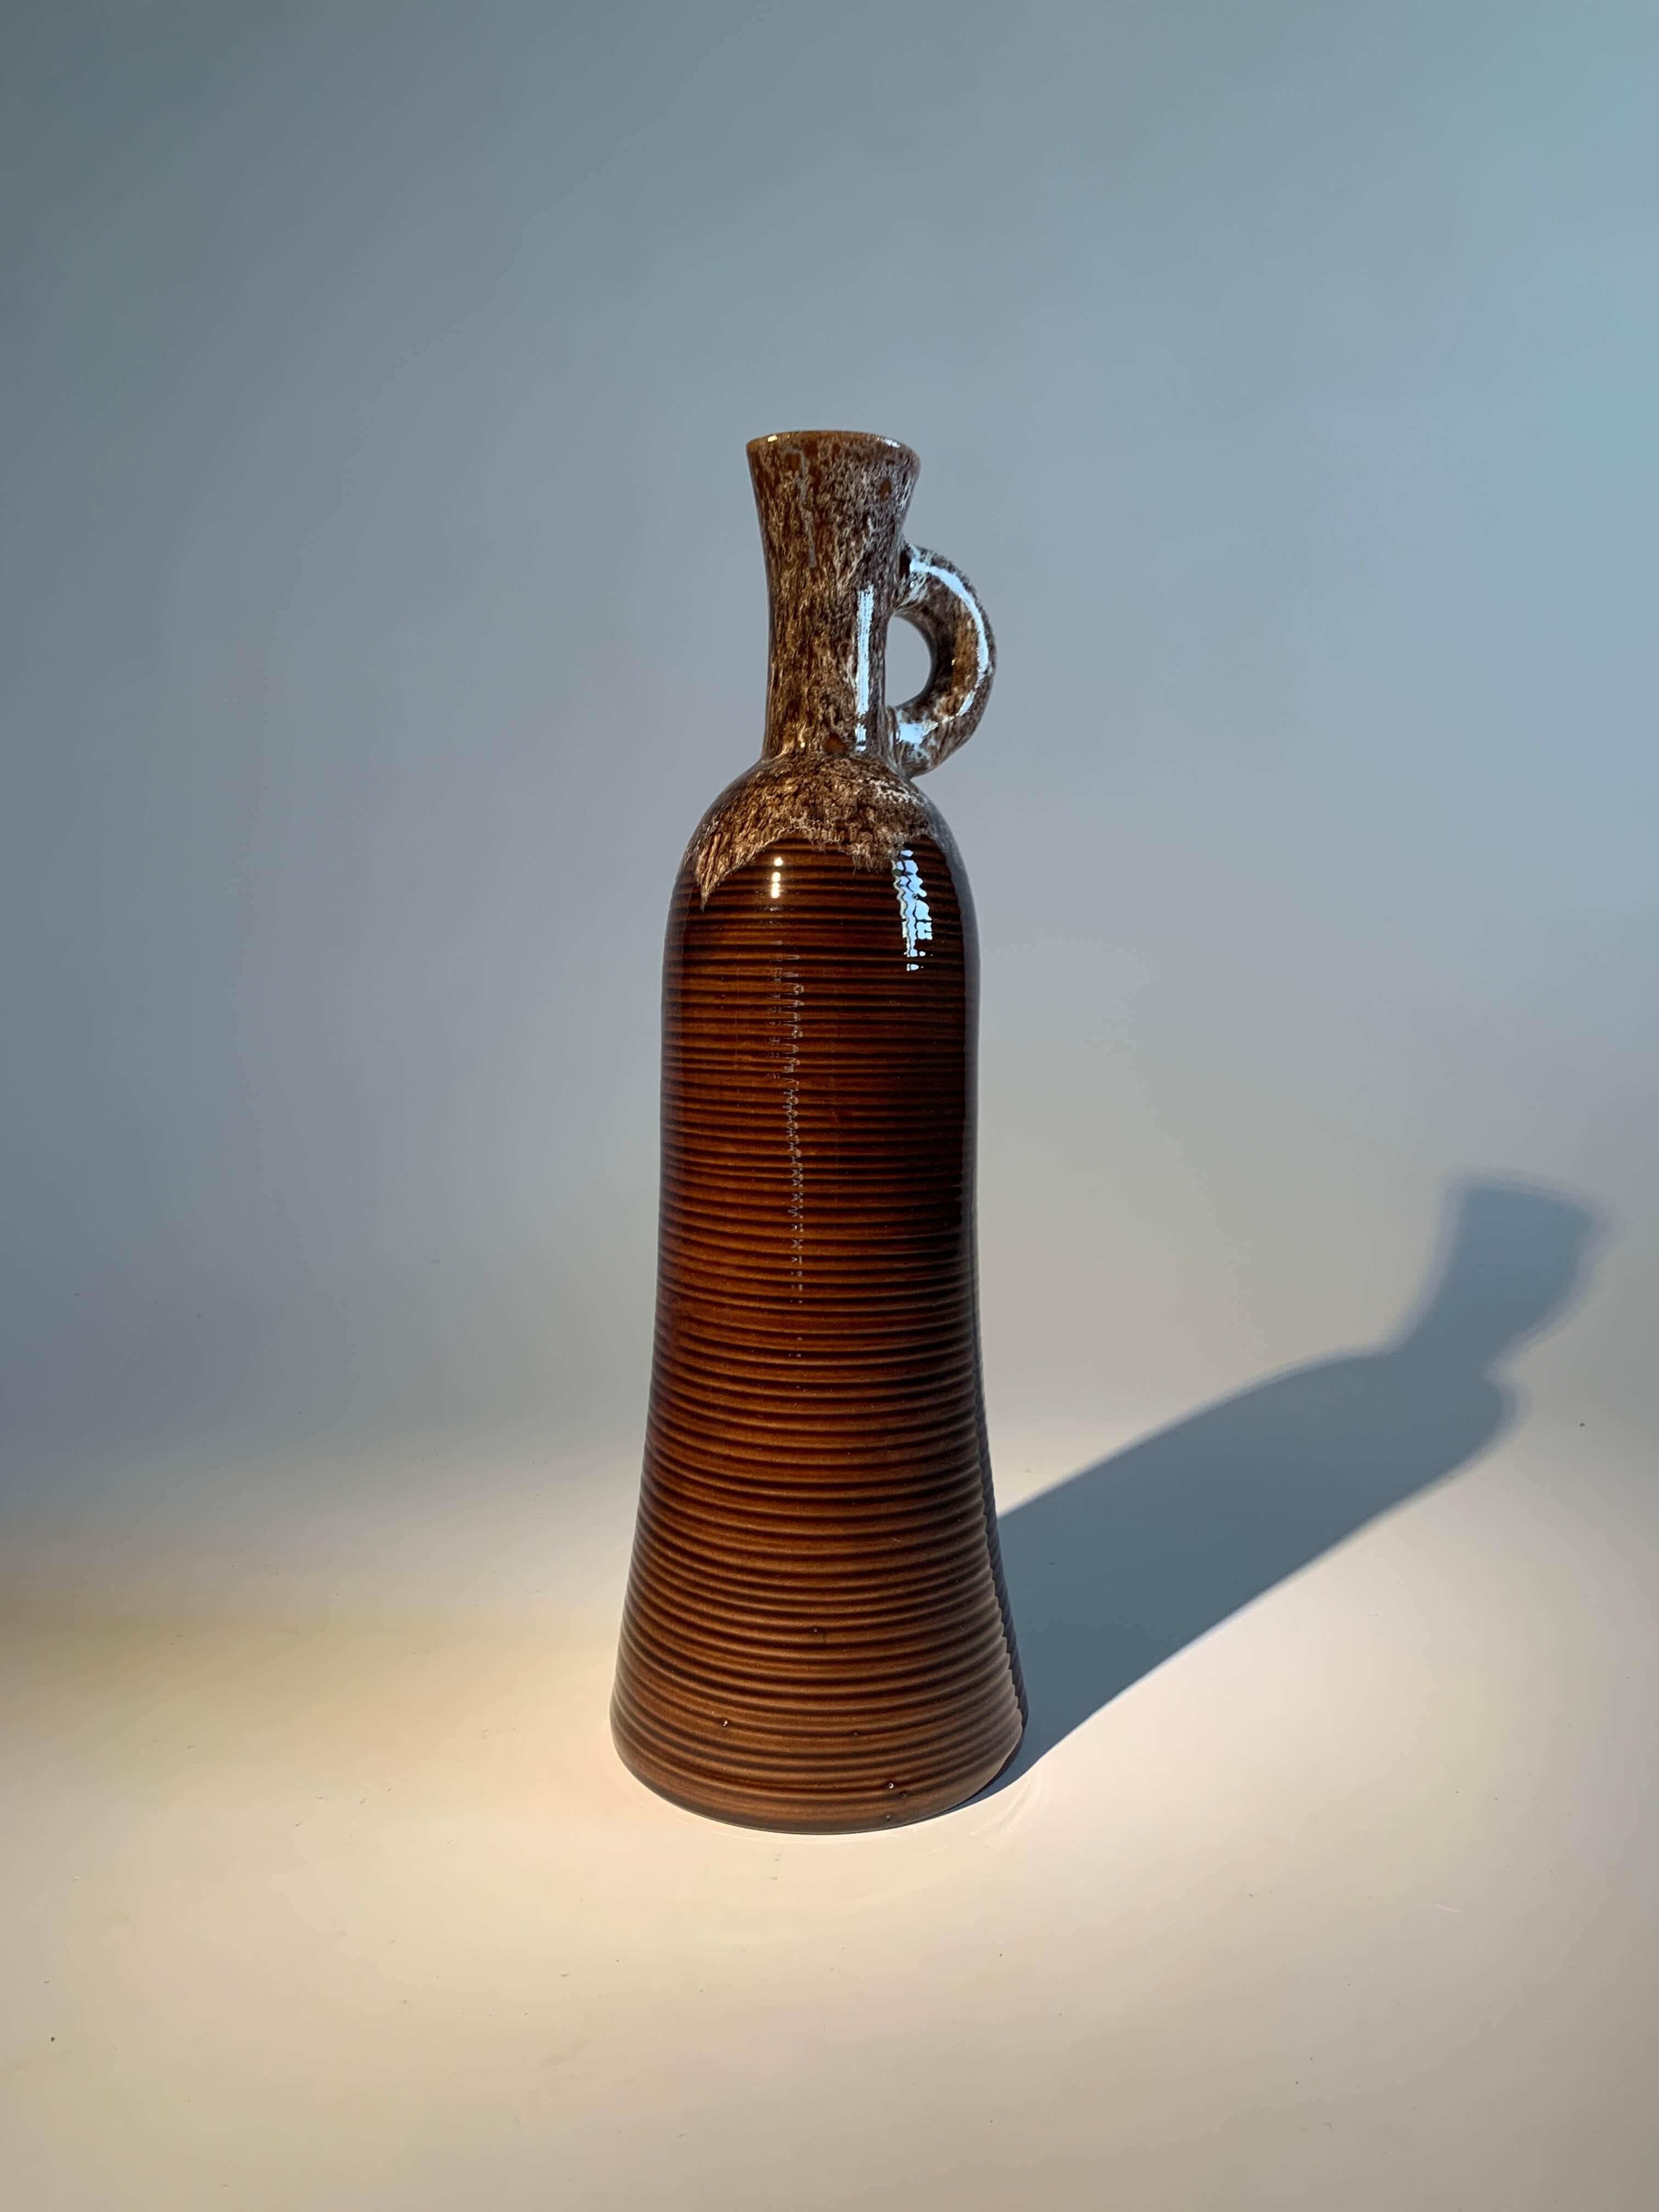 Diese glasierte Keramik von Accolay ist faszinierend, da sie die Anfänge ihrer Entstehung markiert. Es wird in dem wichtigen Buch über Keramik 